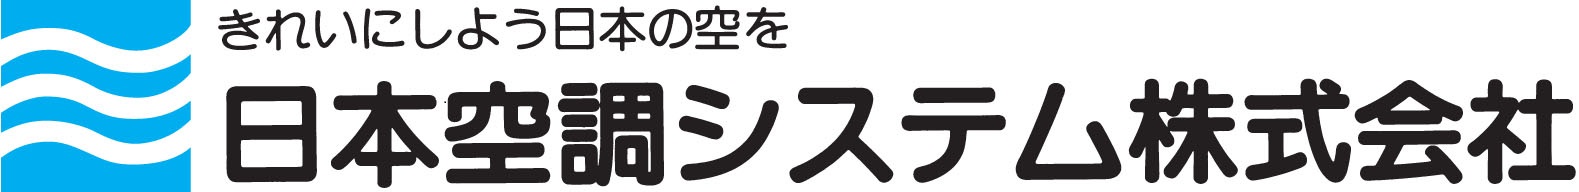 日本空調システム株式会社